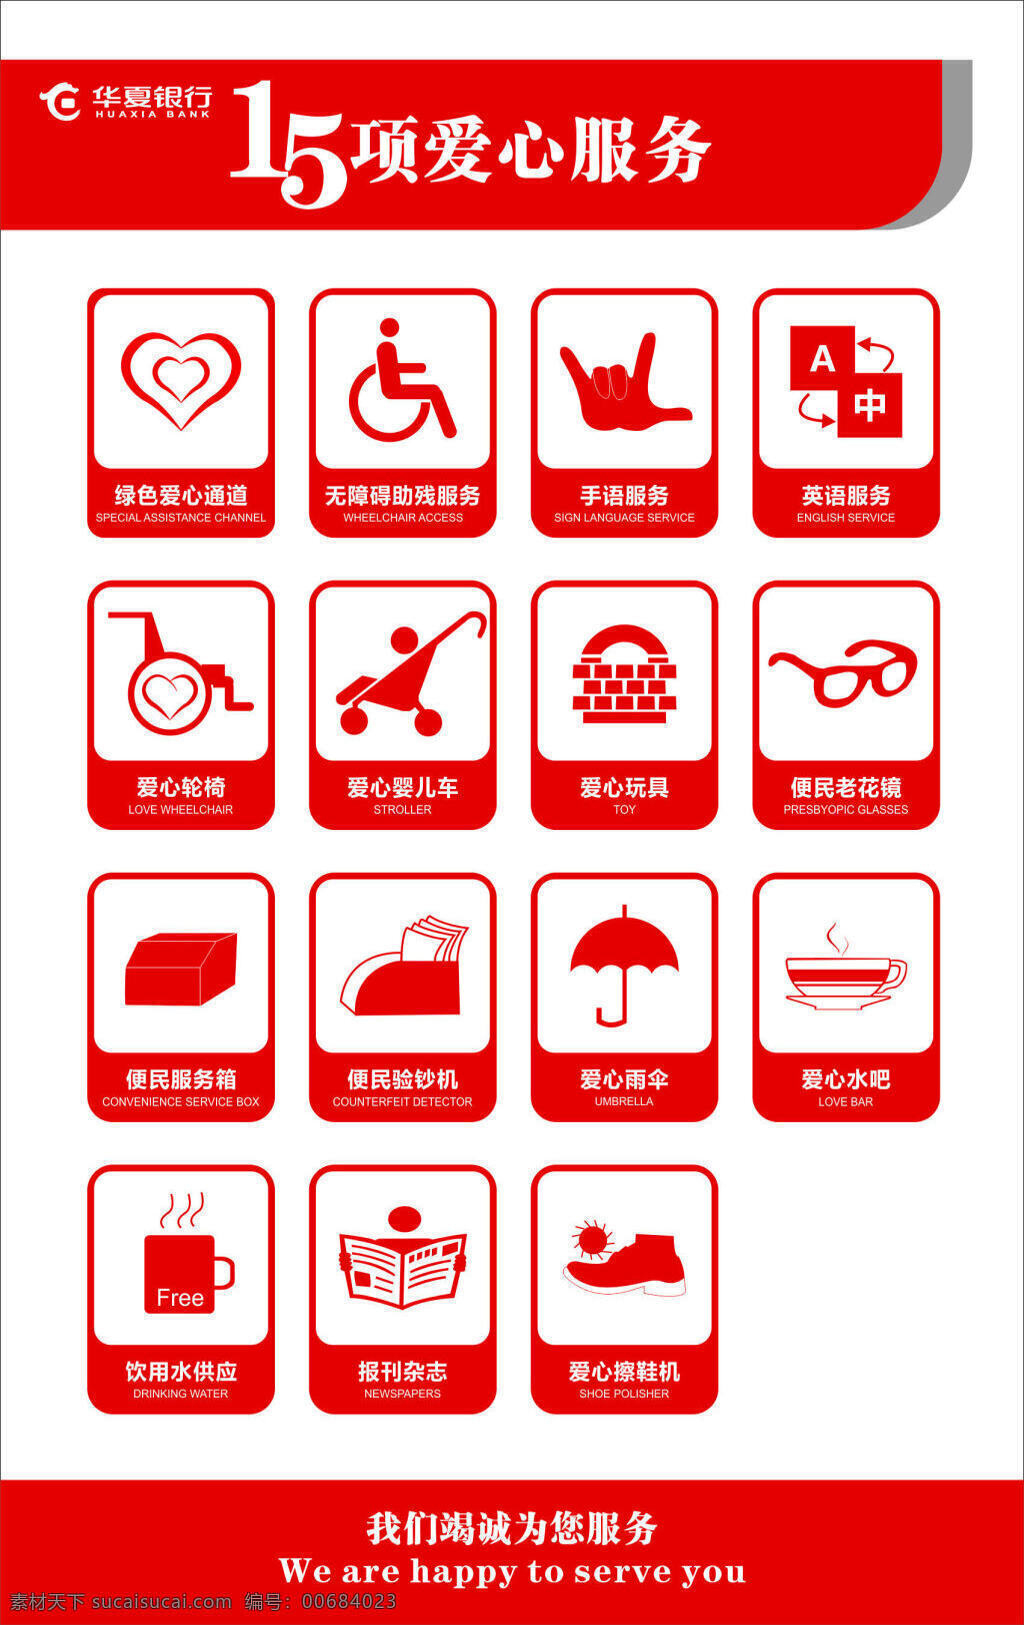 爱心 服务 报刊杂志 便民 华夏银行 轮椅 爱心服务 爱心雨伞 老花镜 白色